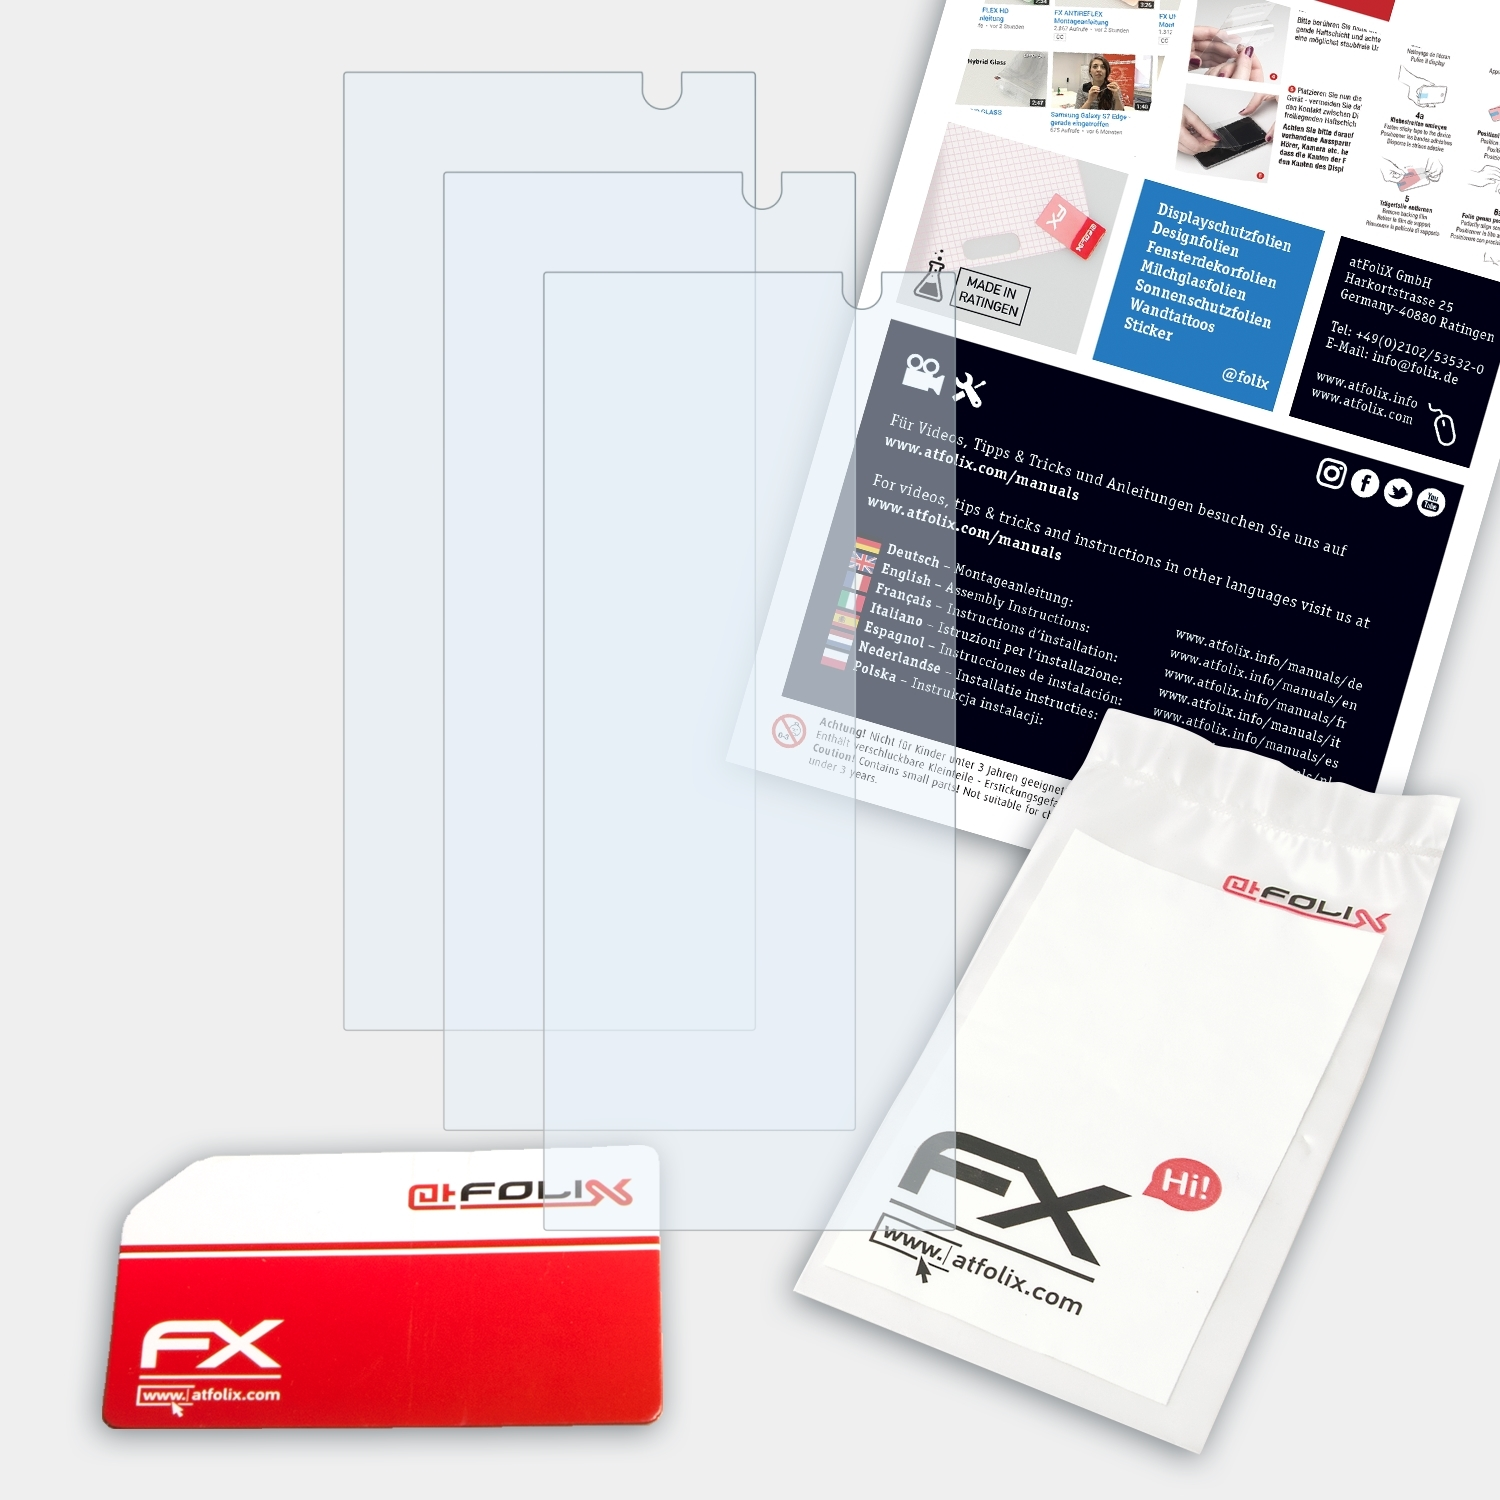 XA2 ATFOLIX Xperia Displayschutz(für Plus) Sony 3x FX-Clear